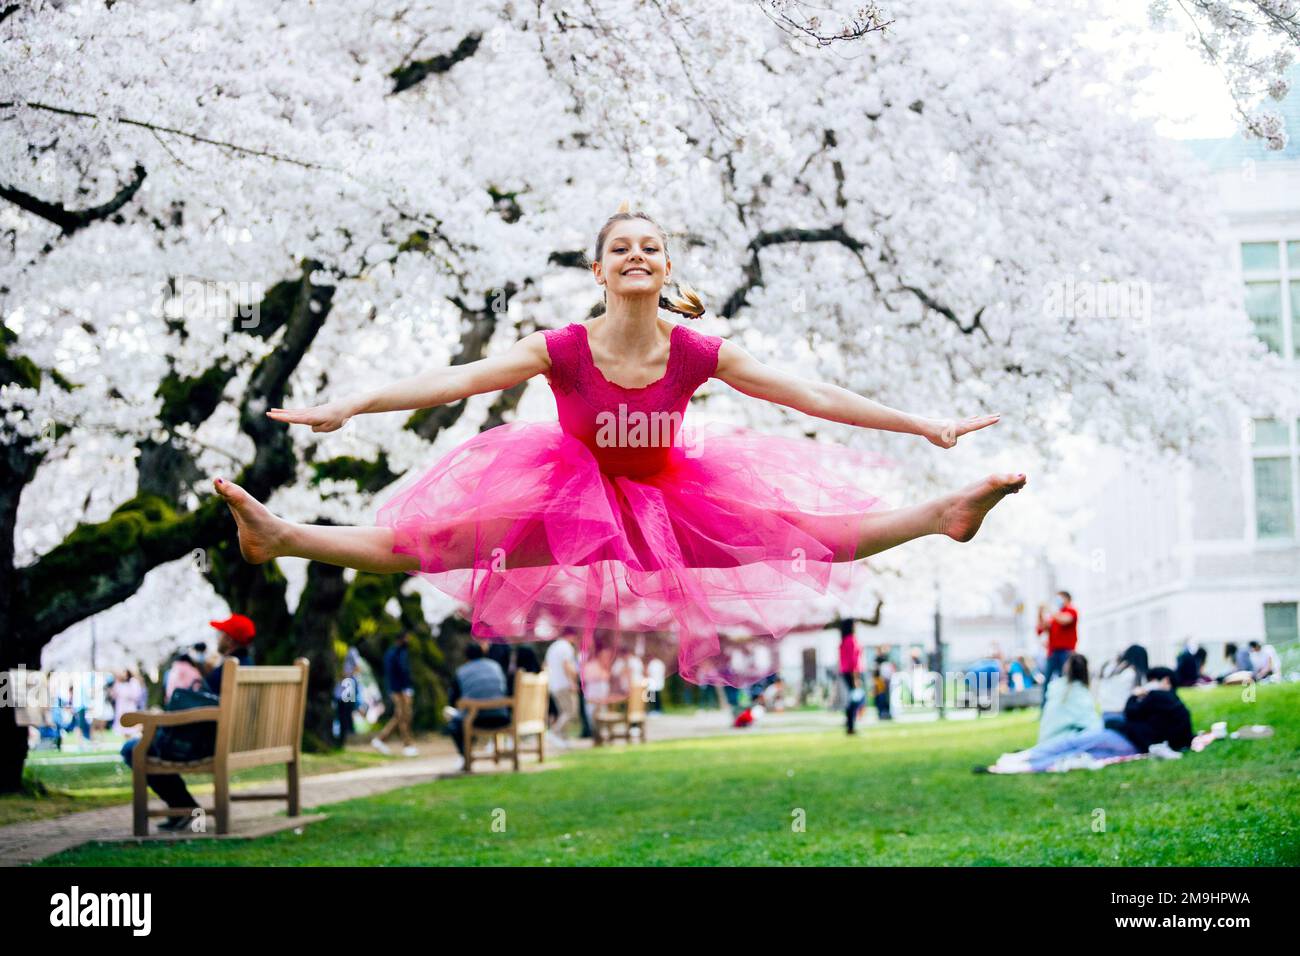 Akrobat in pinkfarbenem Kleid im Park, University of Washington, Seattle, Washington State, USA Stockfoto